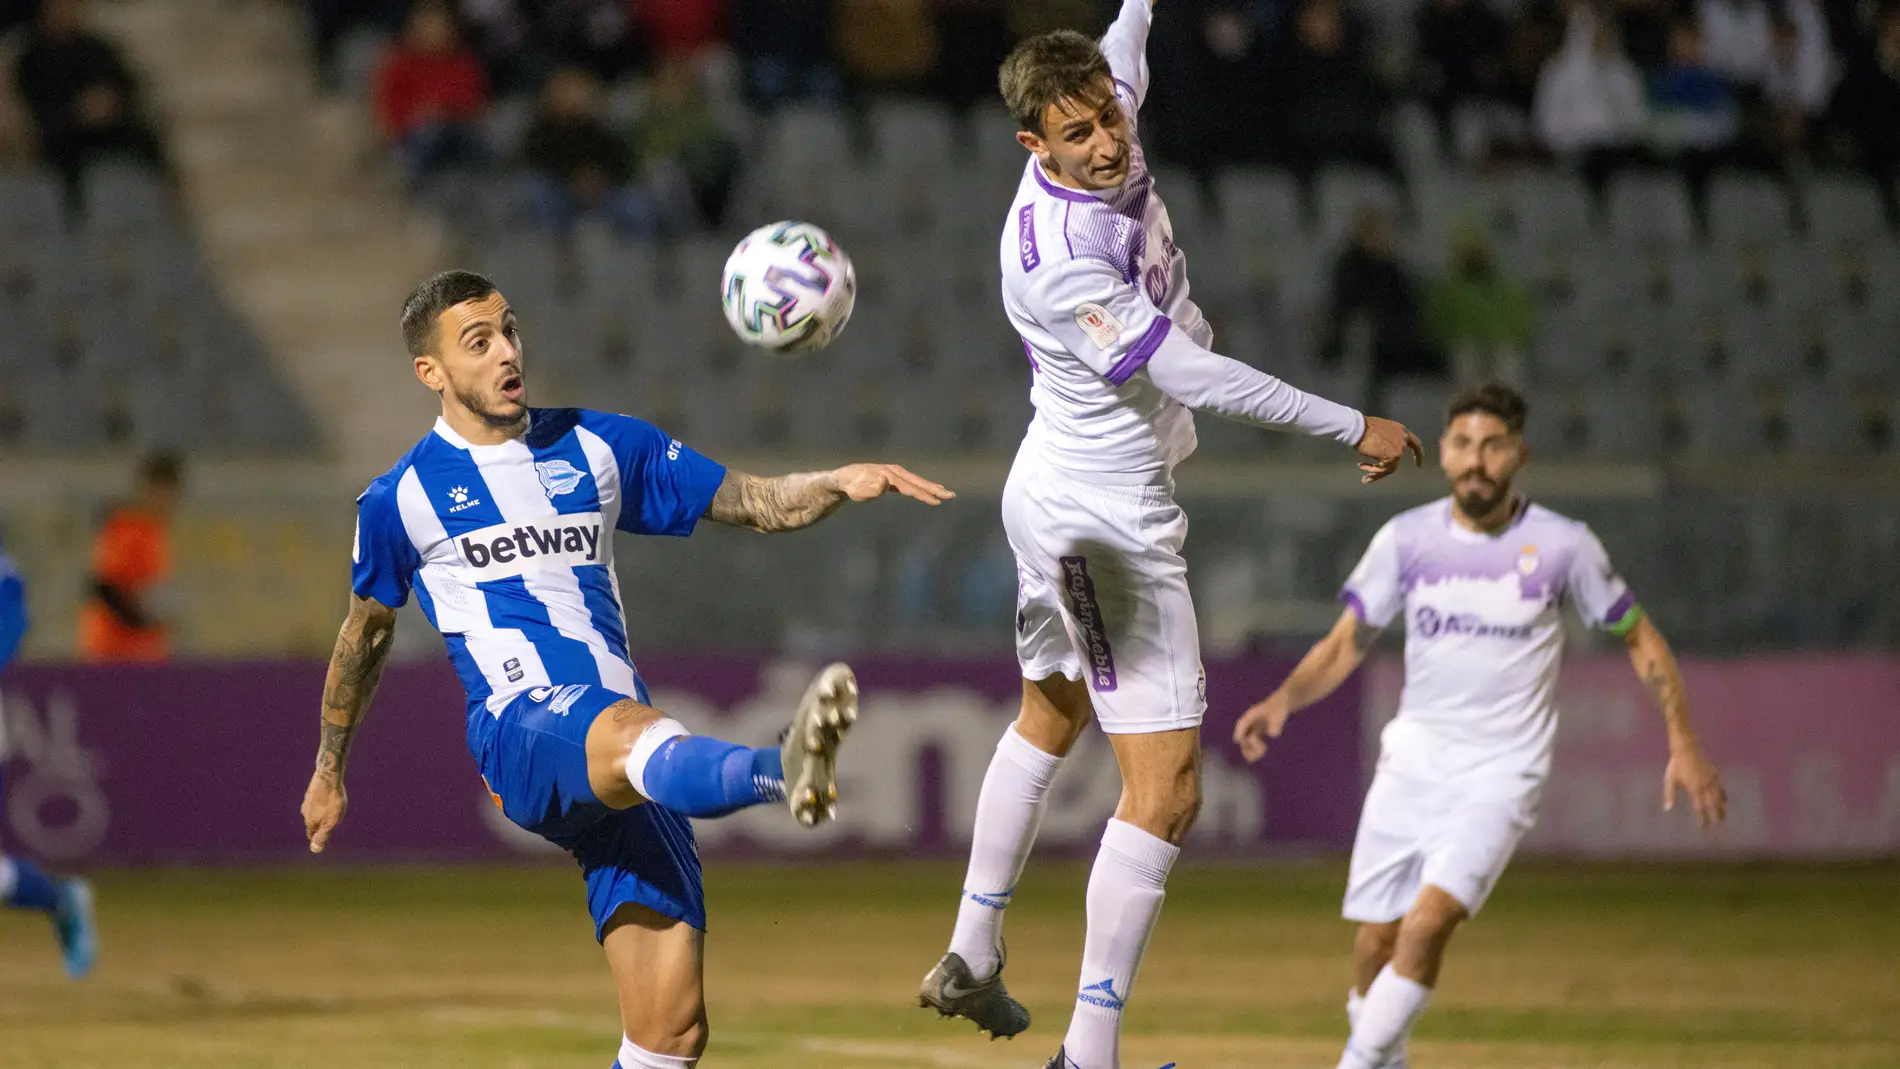  El delantero del Alavés Joselu (iz) disputa la pelota con el jugador del Real Jaén Javier Gutiérrez "Javilillo"